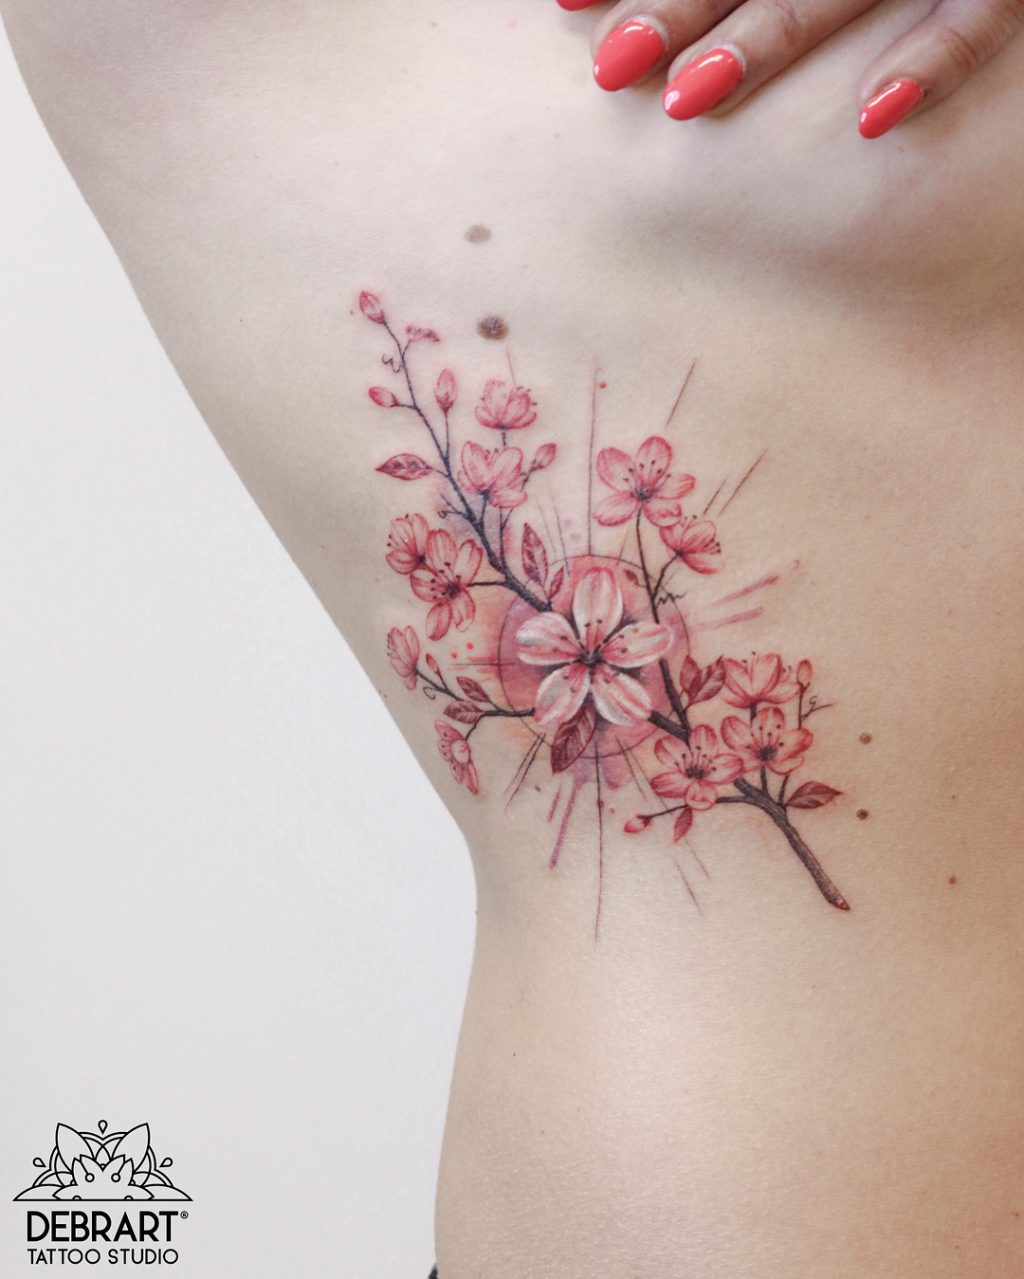 Hình xăm hoa bỉ ngạn ở vai 👉 𝘏𝘪̀𝘯𝘩... - Đỗ Nhân Tattoo Studio |  Facebook